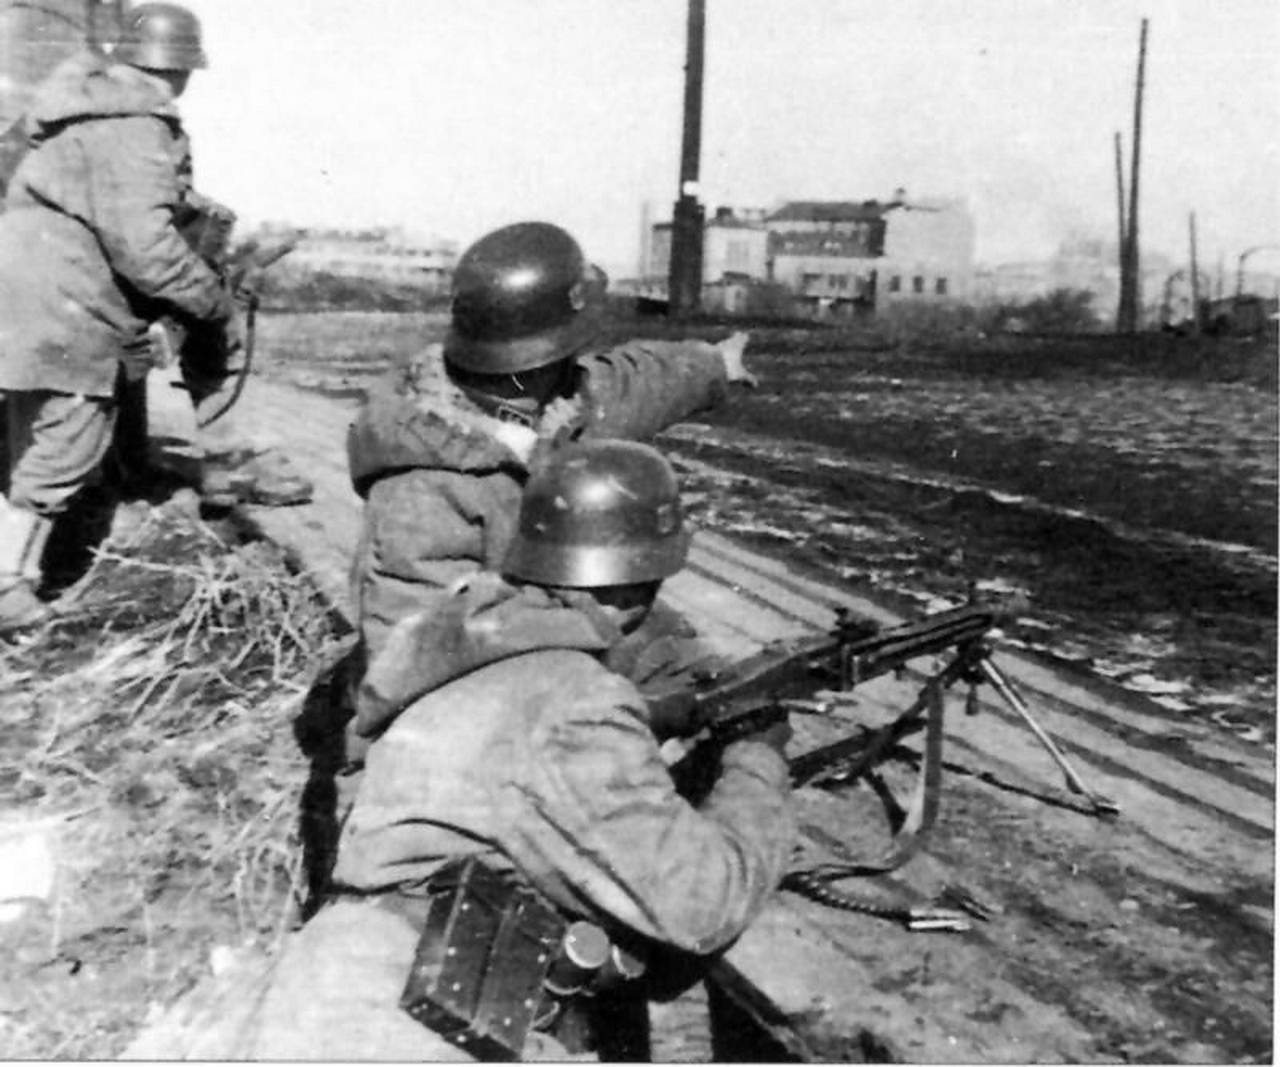 Сс в действии. MG 42 Вермахт. Солдат вермахта с мг 42. Танкисты СС 1943 Харьков.